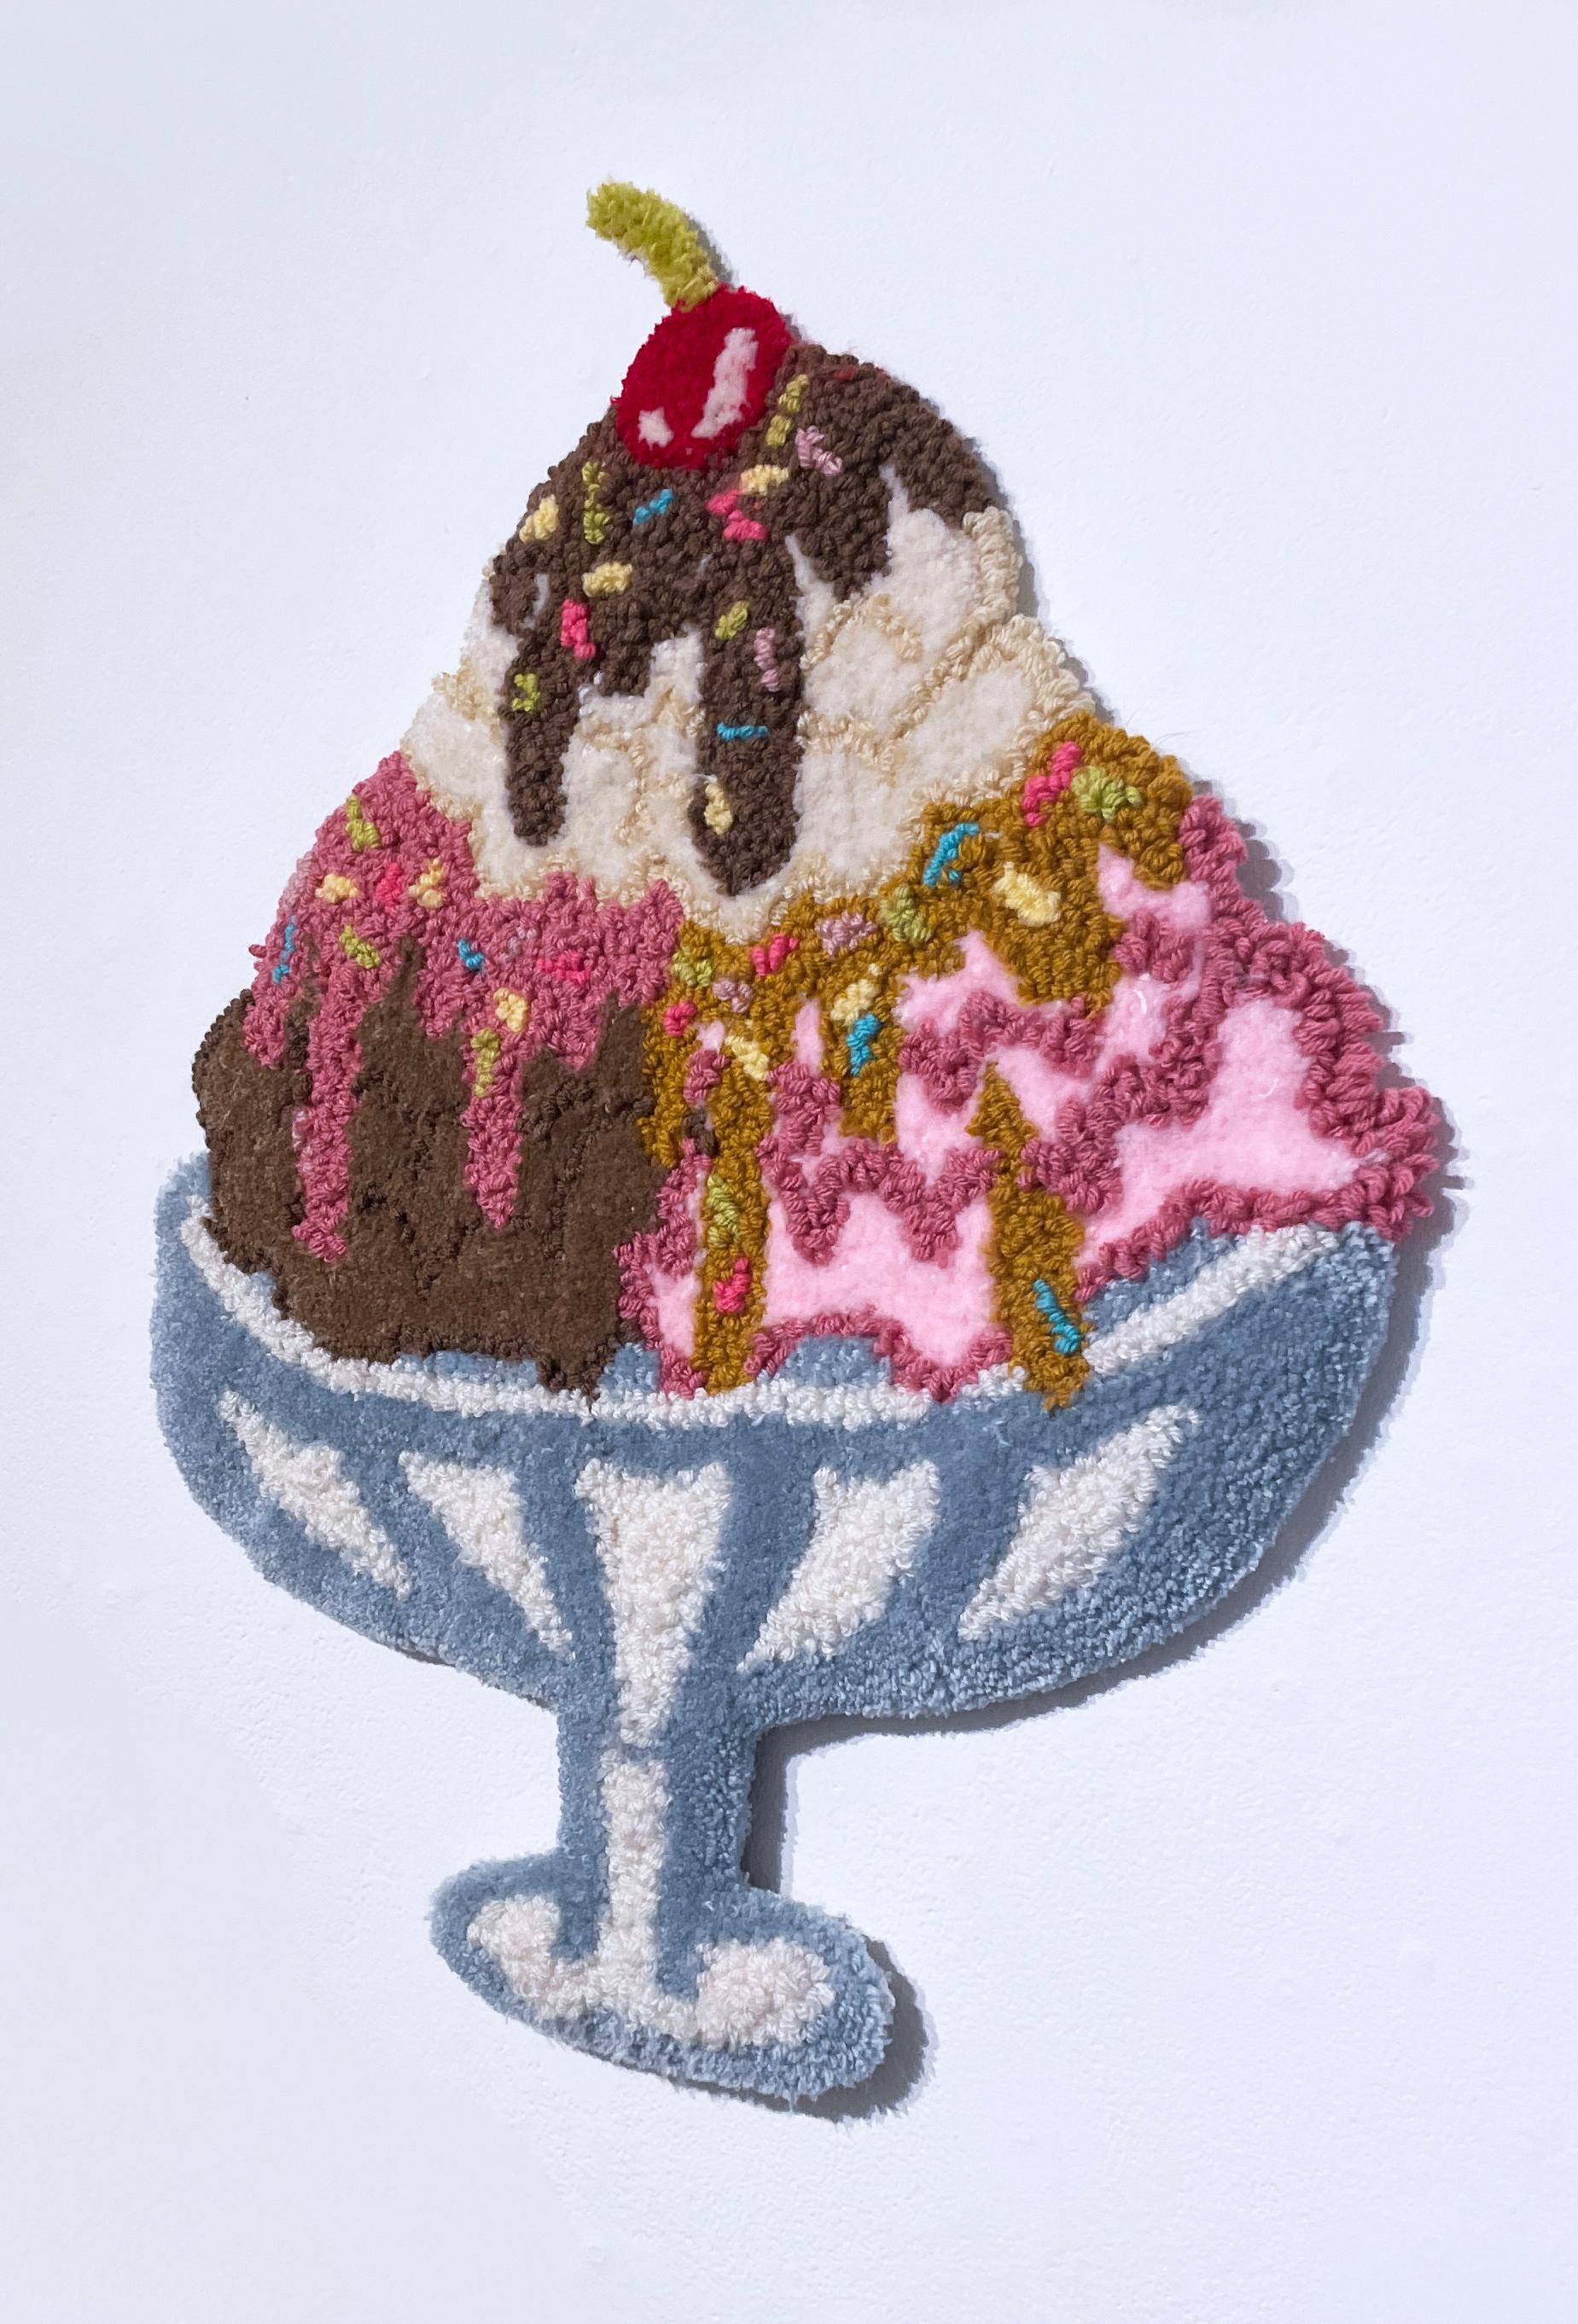 Publicité : Crème glacée (20232), art mural touffeté, textile, fibre, fil, rose - Contemporain Sculpture par SarahGrace